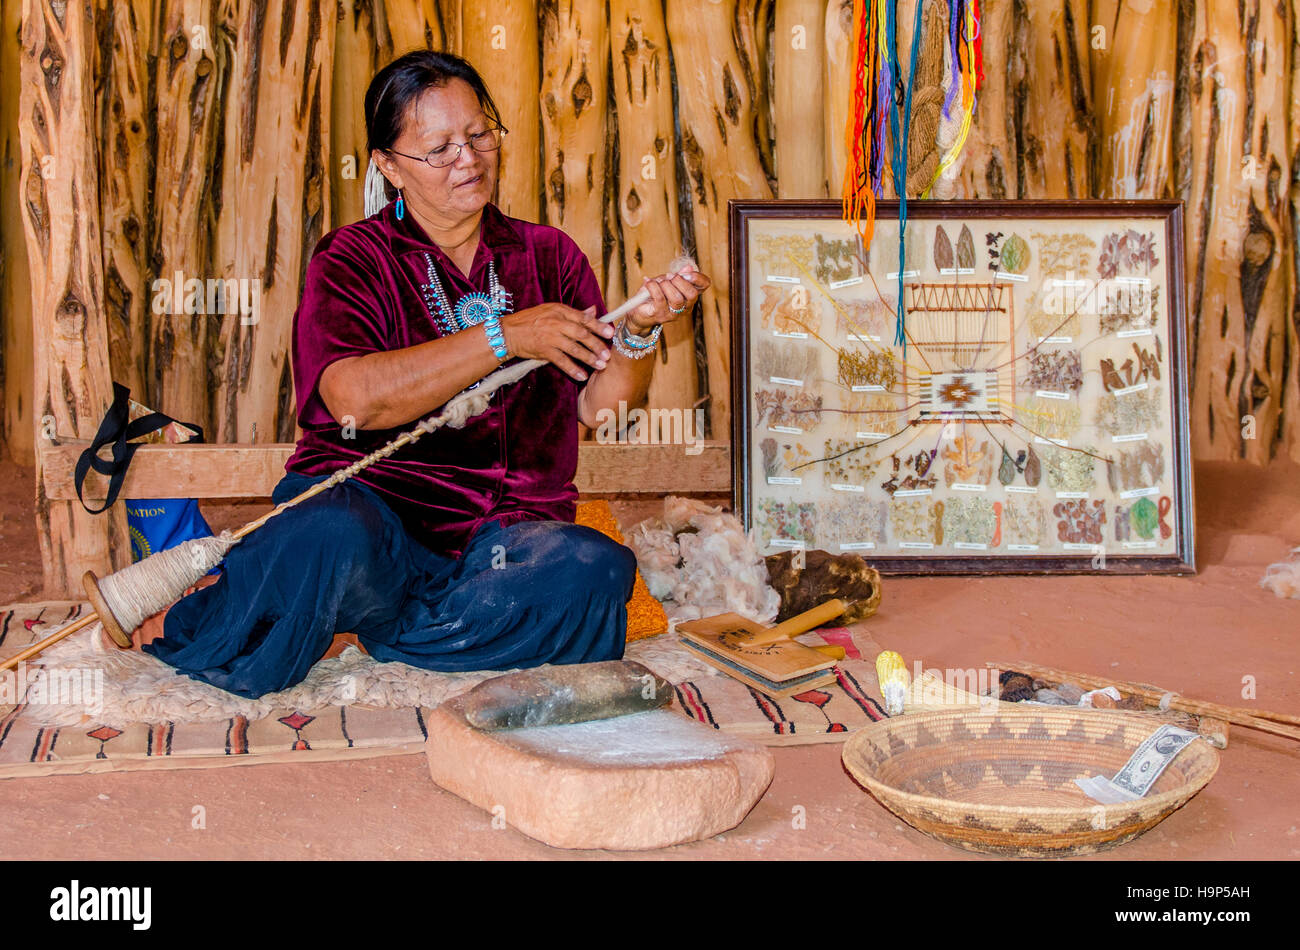 Femme Navajo travaillent avec la laine, le tricot, le tissage, Monument Valley Navajo Tribal Park, Monument Valley, Utah, USA. Banque D'Images